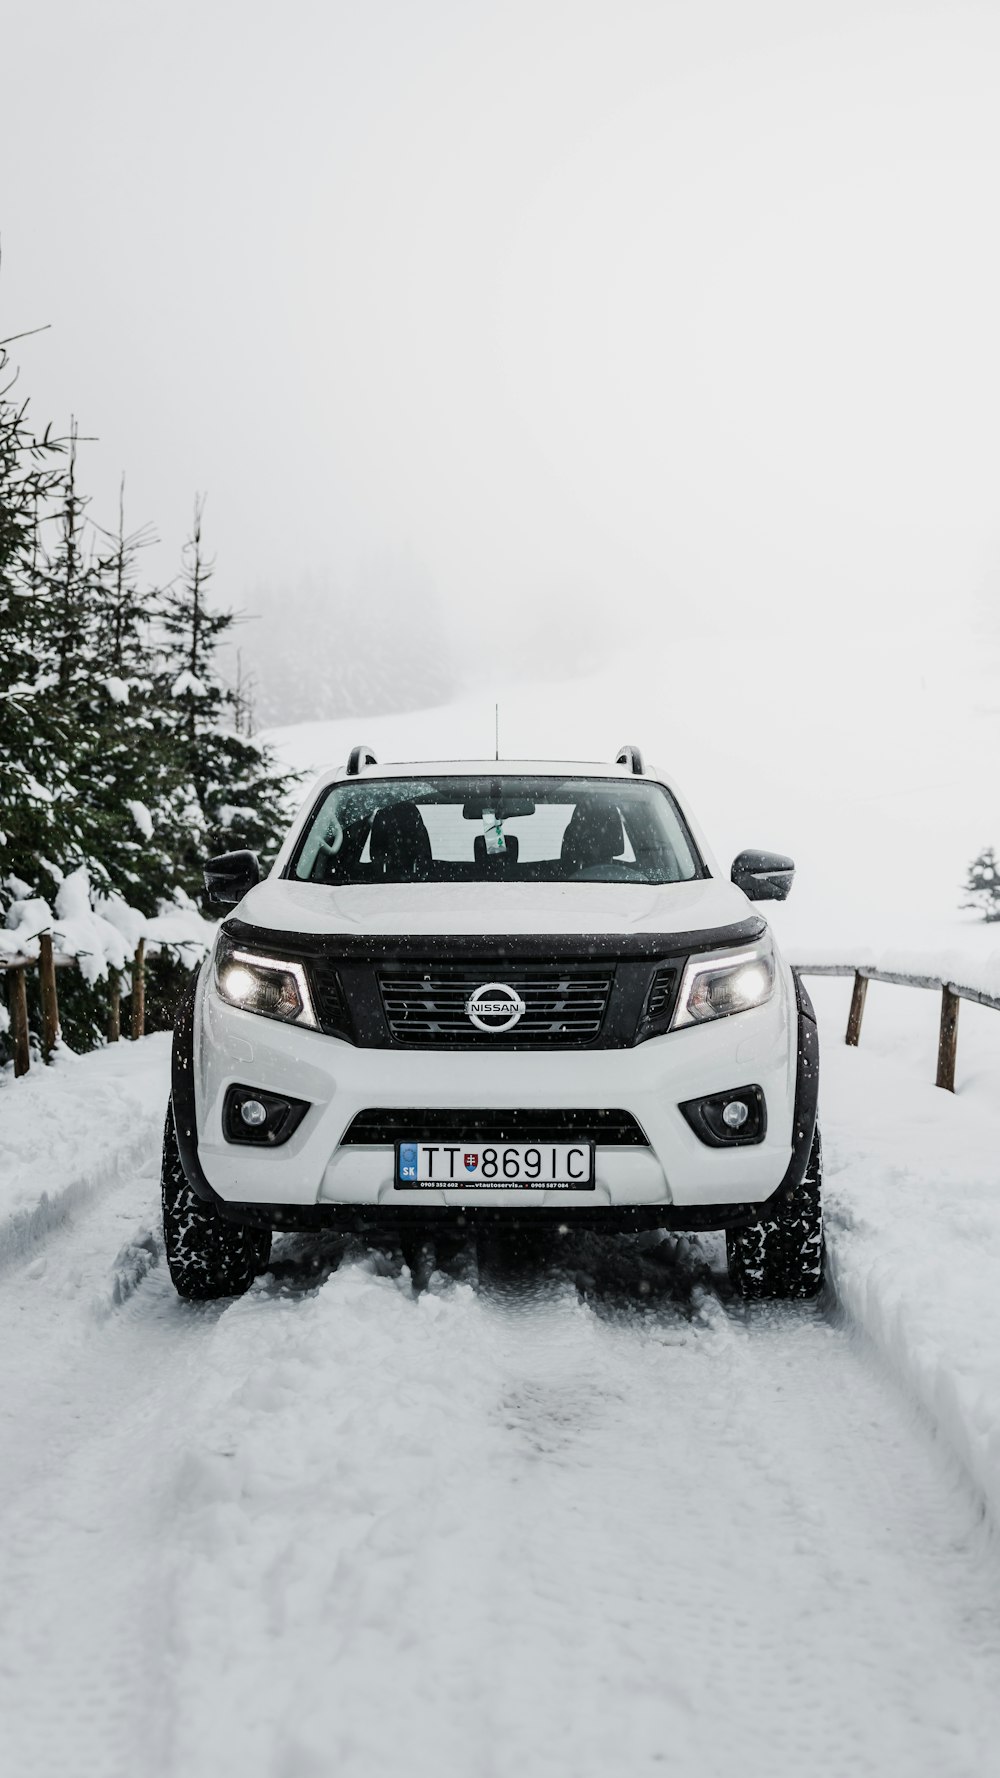 Grauer Nissan SUV tagsüber auf schneebedeckter Straße